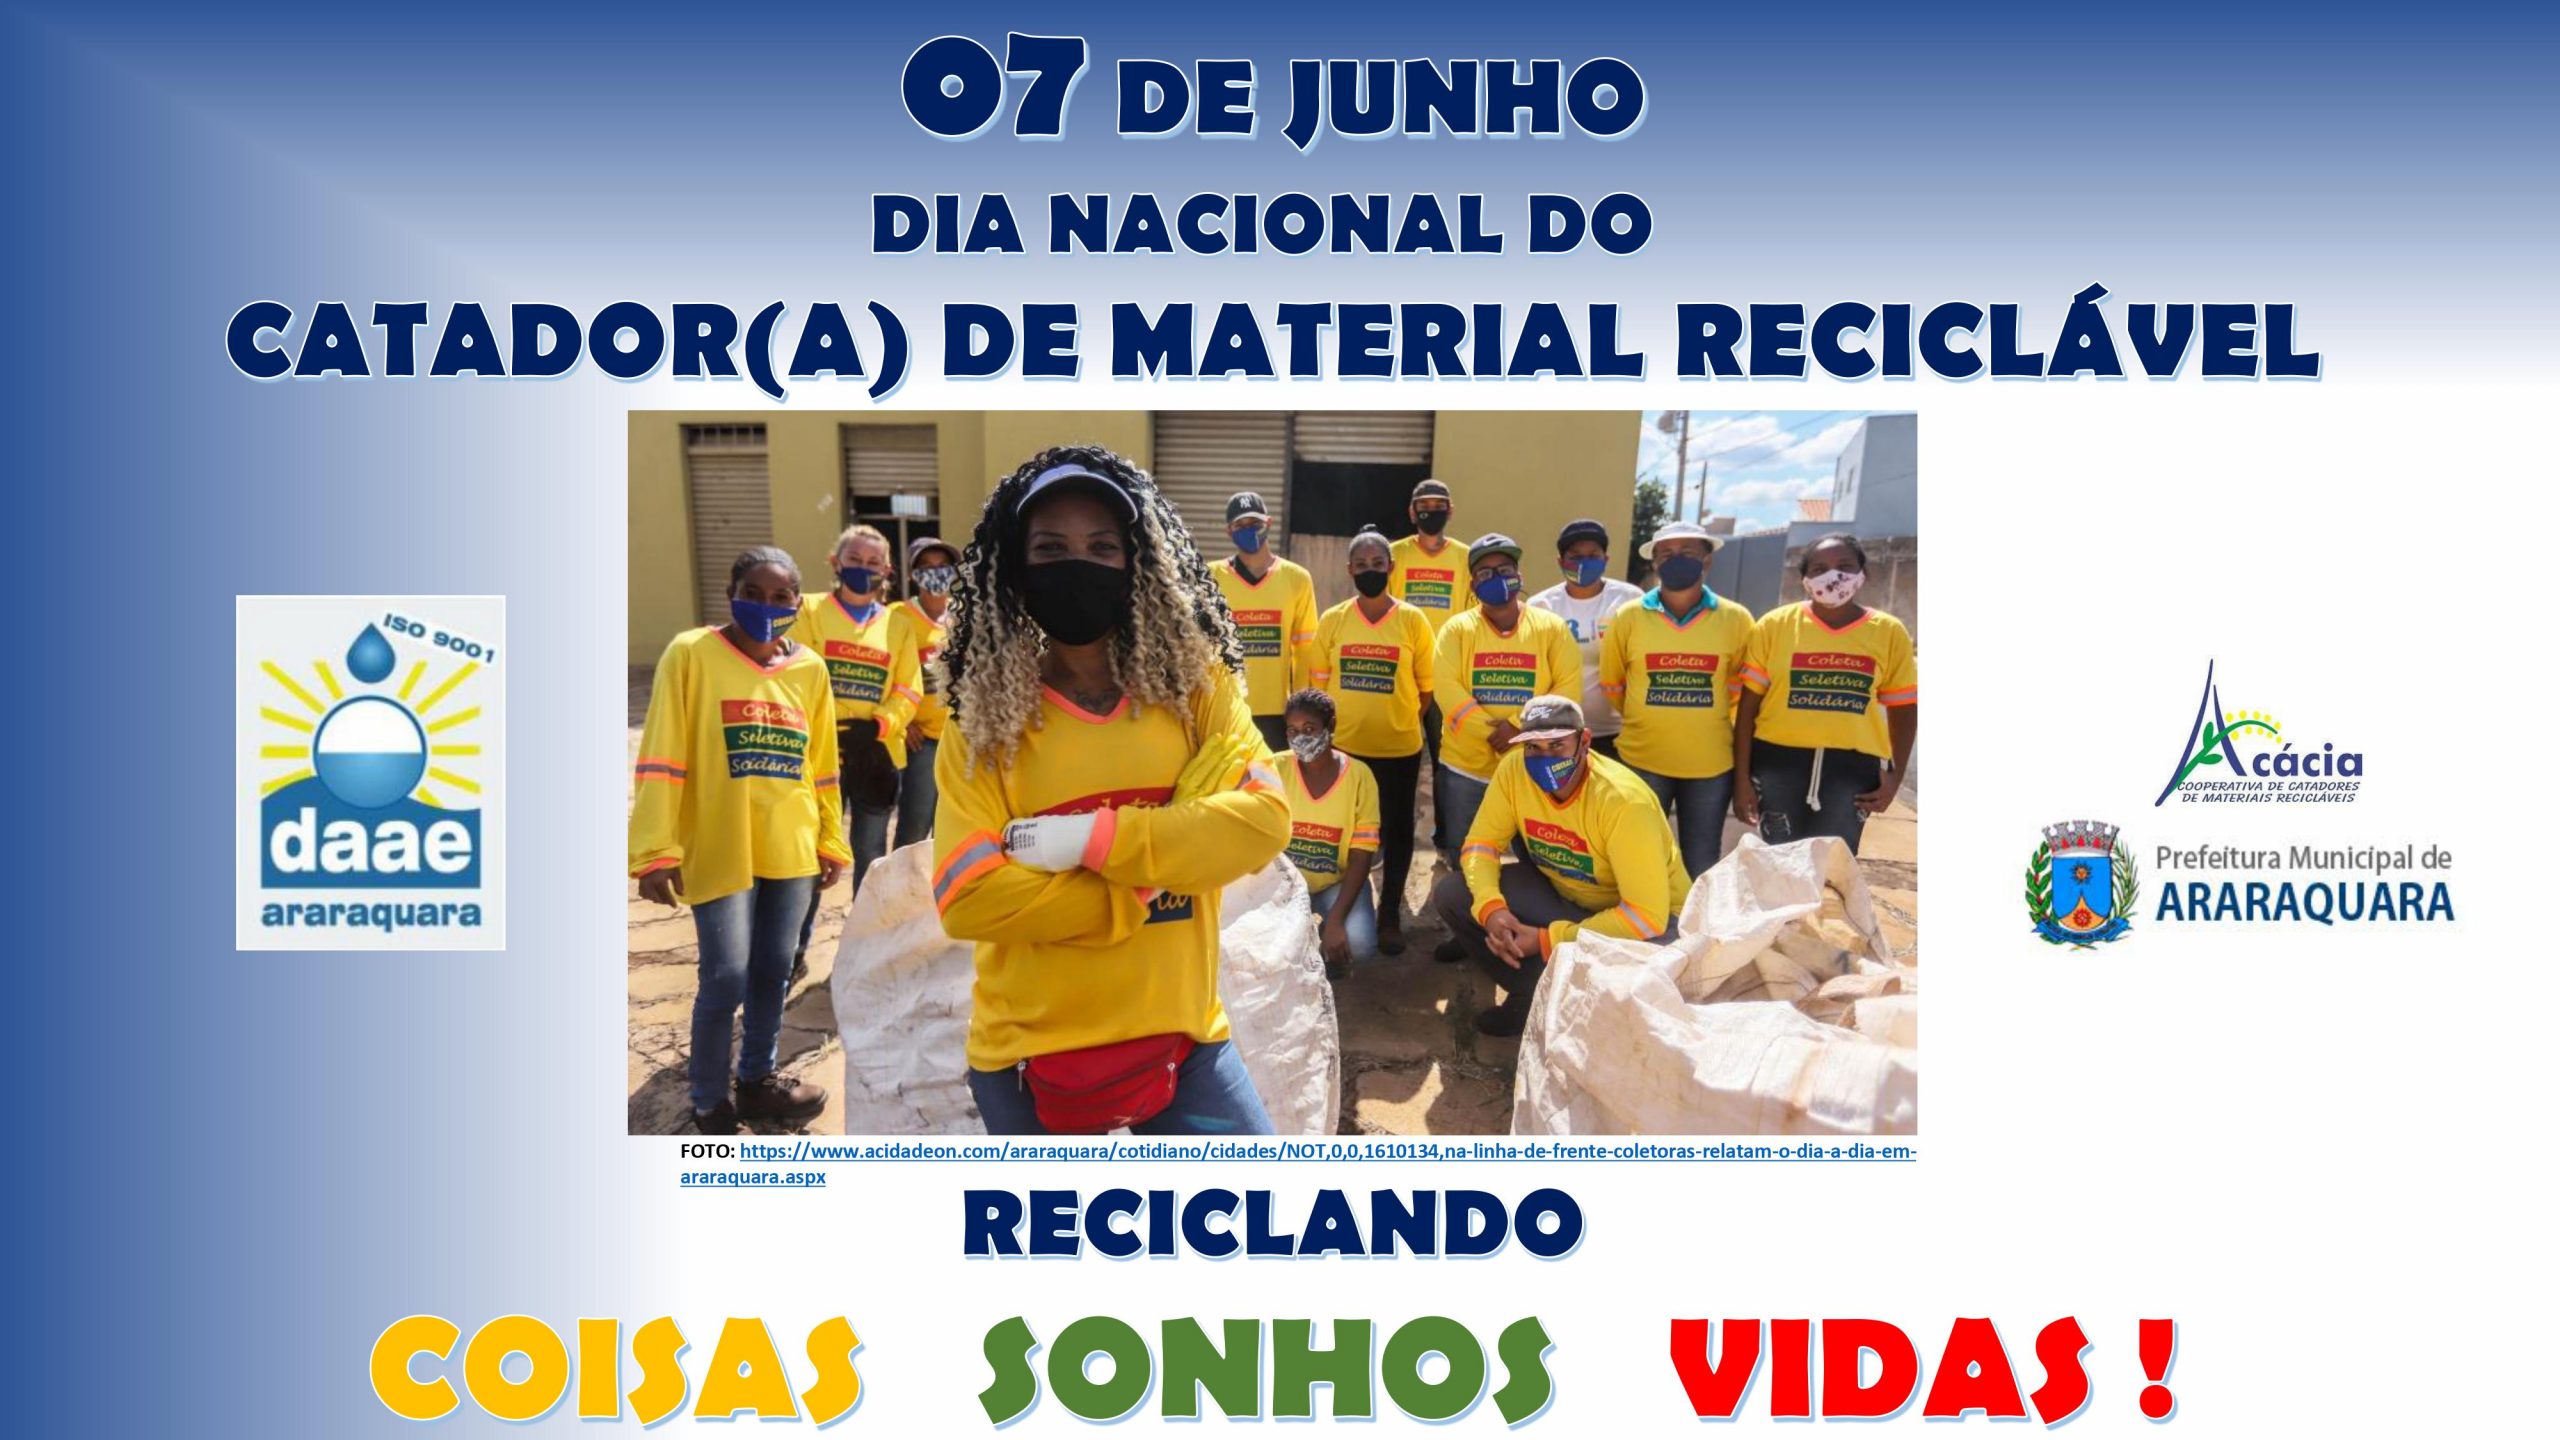 07 de junho – Dia Nacional do Catador(a) de Material Reciclável